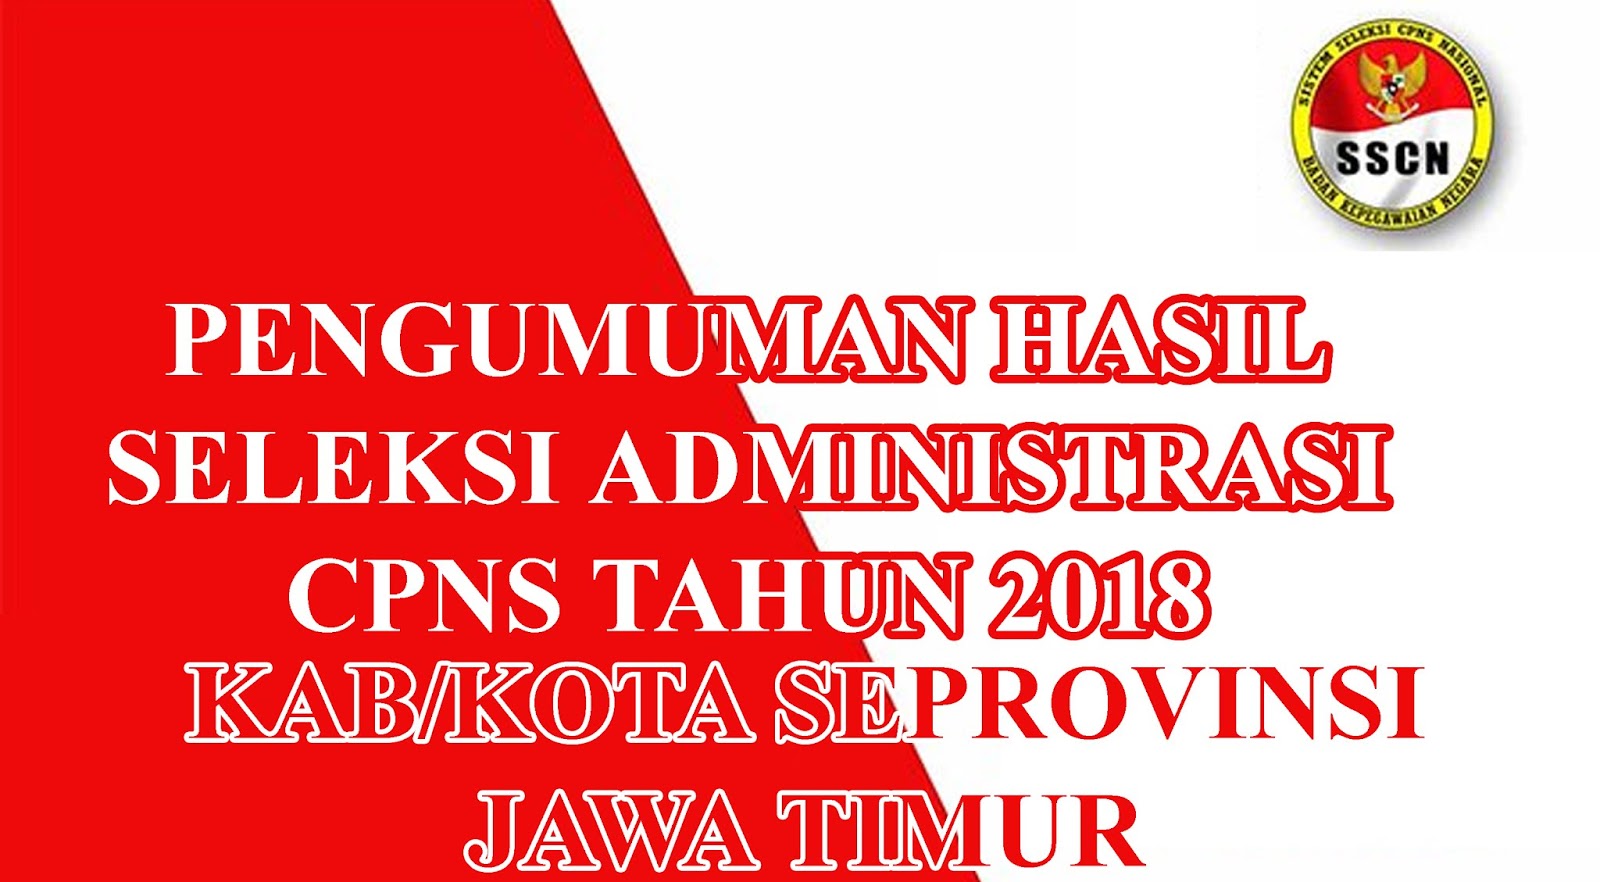 Pengumuman Seleksi Administrasi Cpns Kabkota Provinsi Jawa